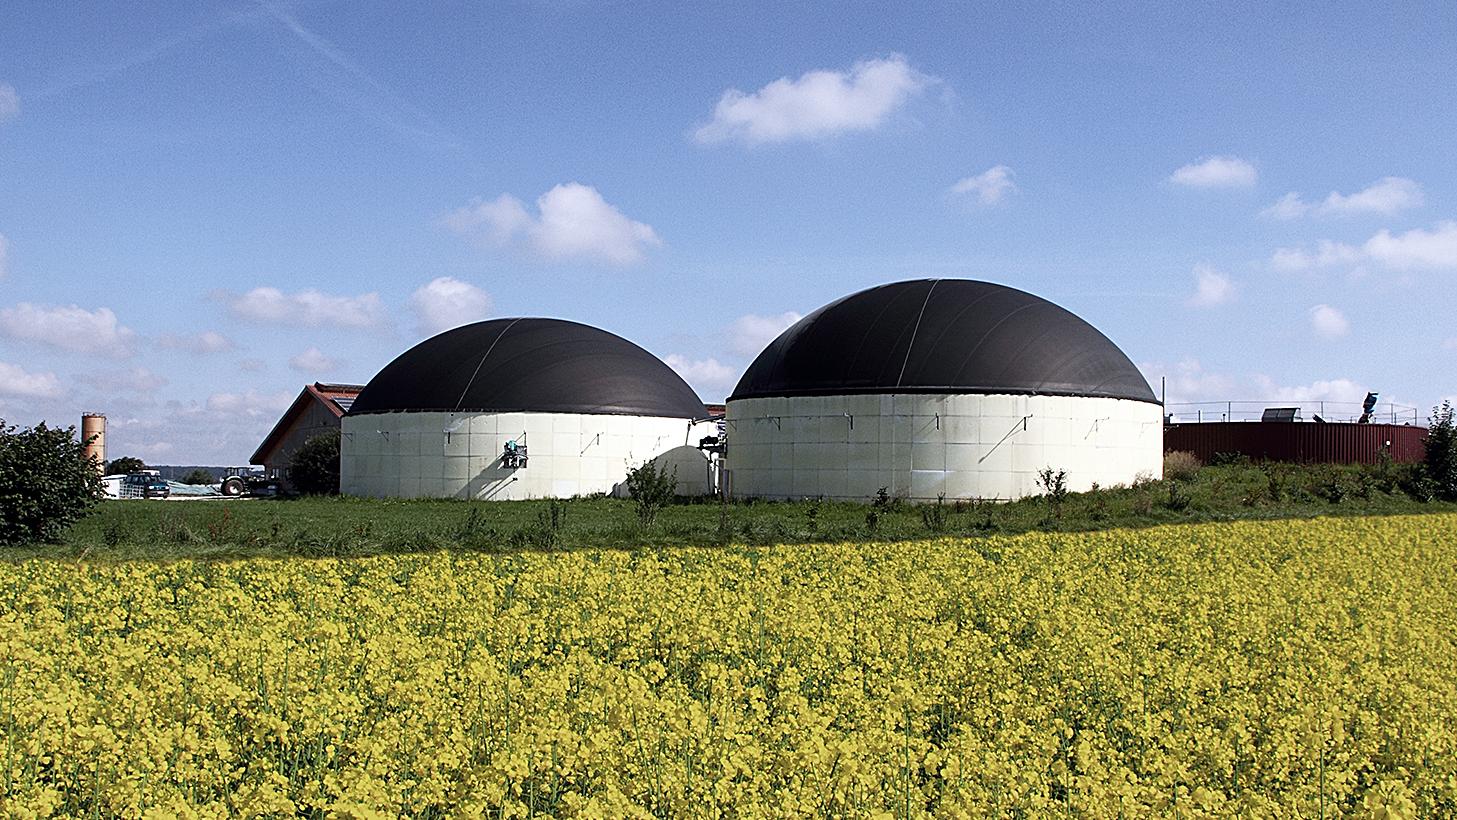 Biogasanlage auf einem Rapsfeld bei gutem Wetter und blauem Himmel